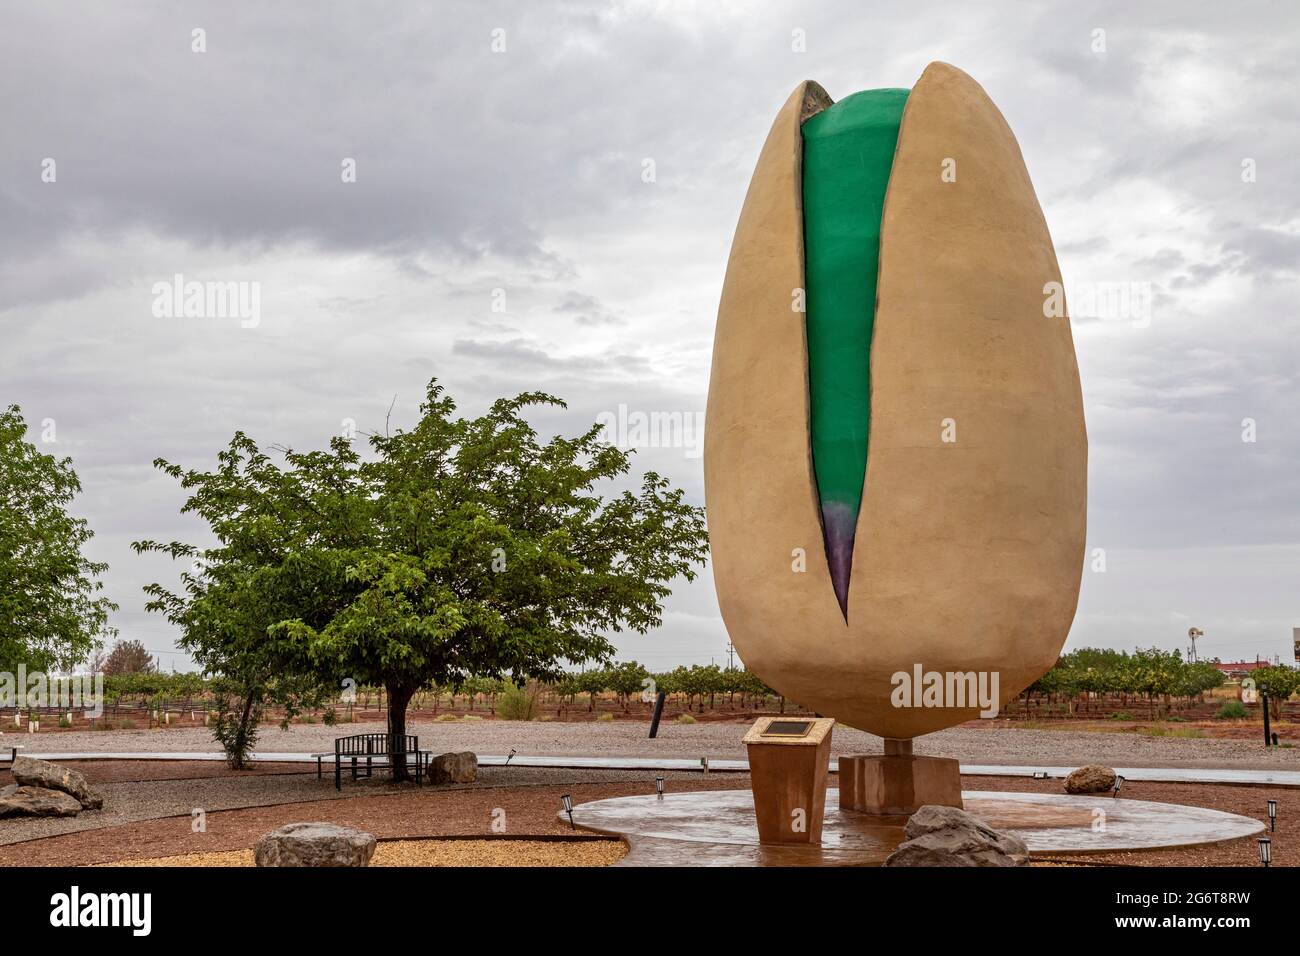 Alamogordo, Nuevo México - Una escultura de pistacho gigante en el Rancho Pistacho de McGinn. Foto de stock